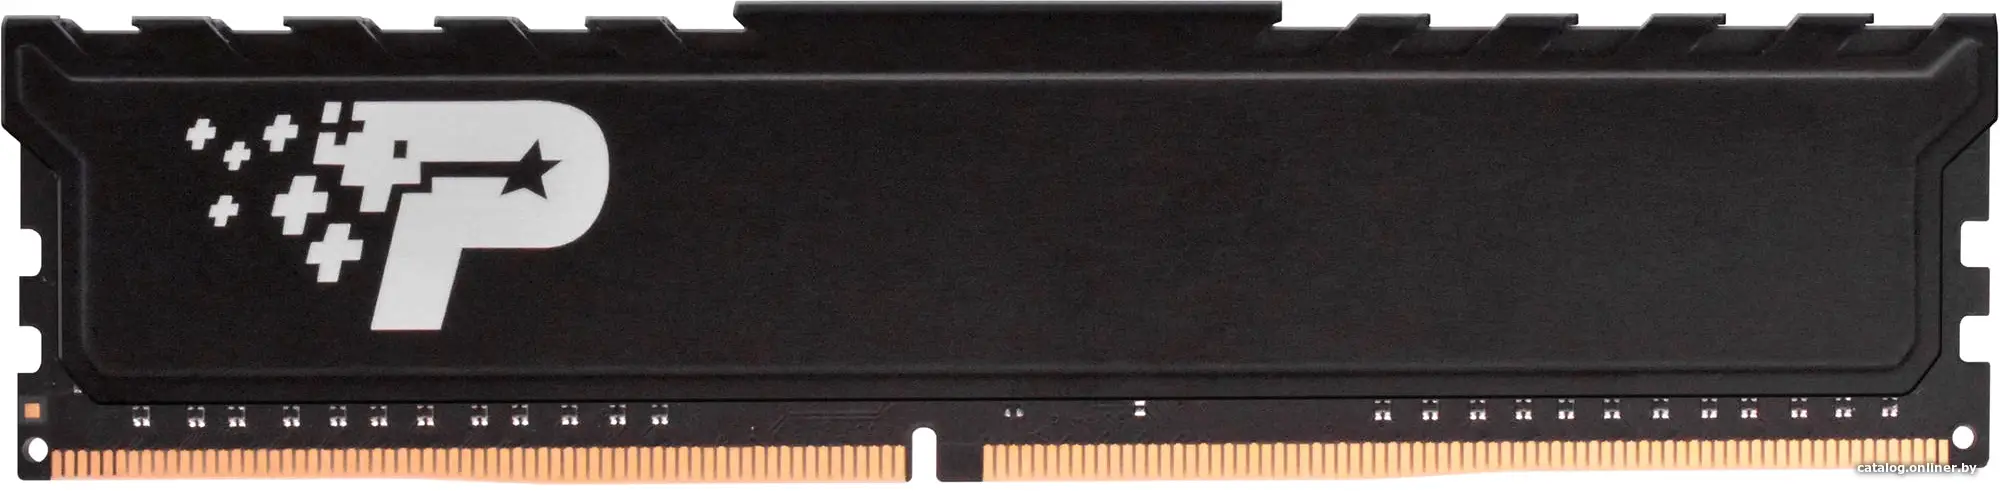 Купить Модуль памяти DIMM 32GB PC25600 DDR4 PSP432G32002H1 PATRIOT, цена, опт и розница